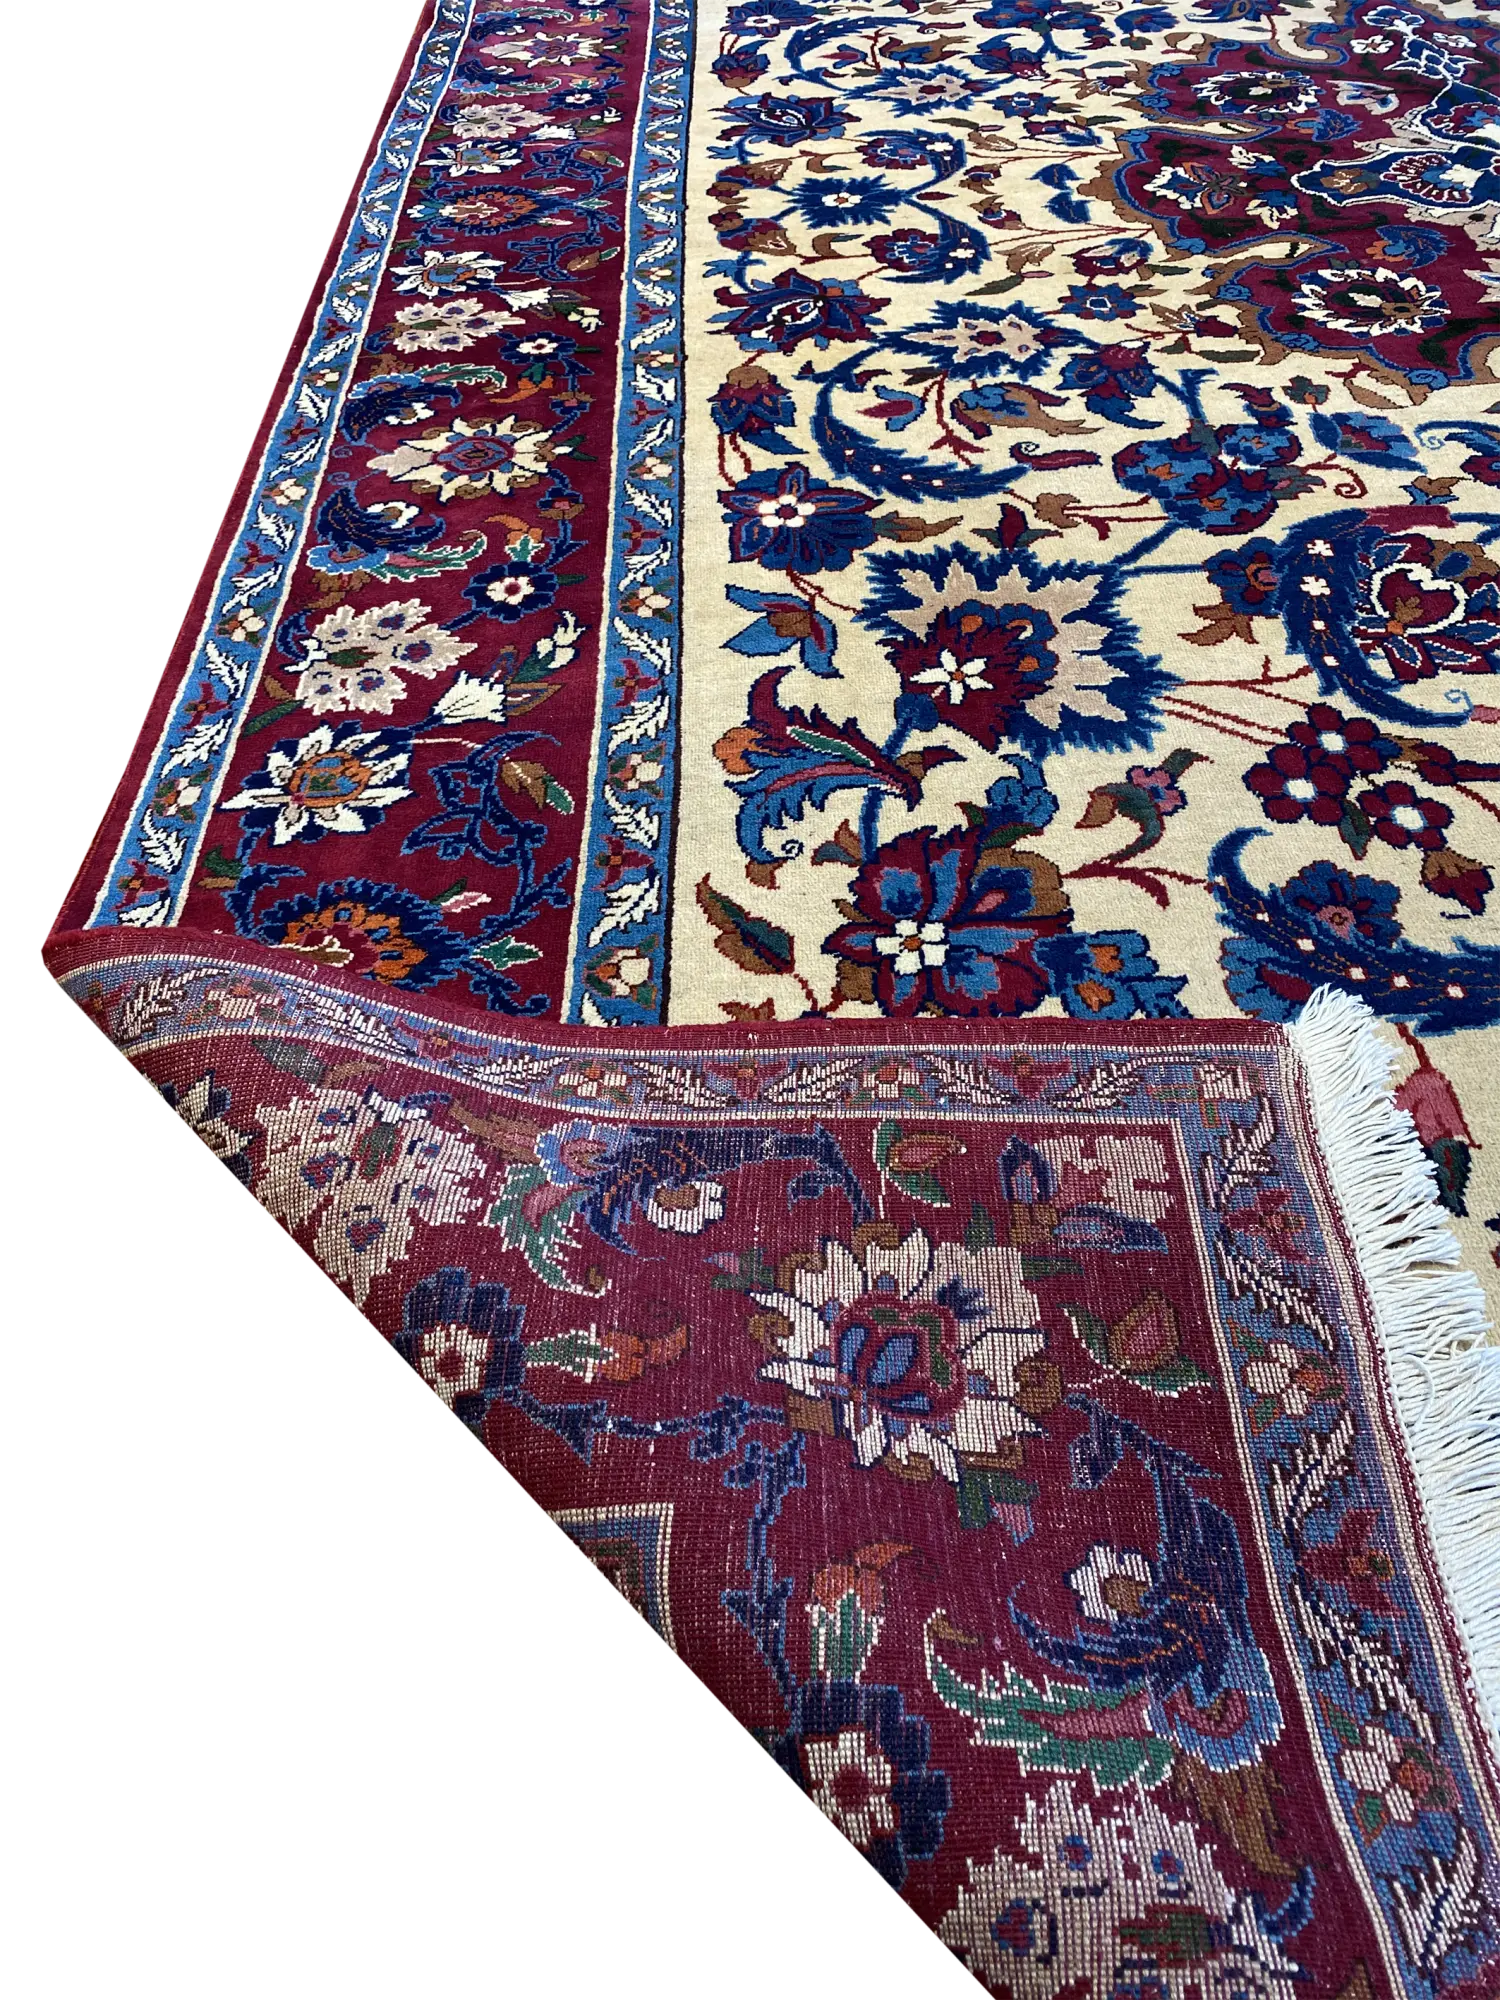 Vintage Persian Yazd 8' 1" x 11' 8" Handmade Area Rug - Shabahang Royal Carpet